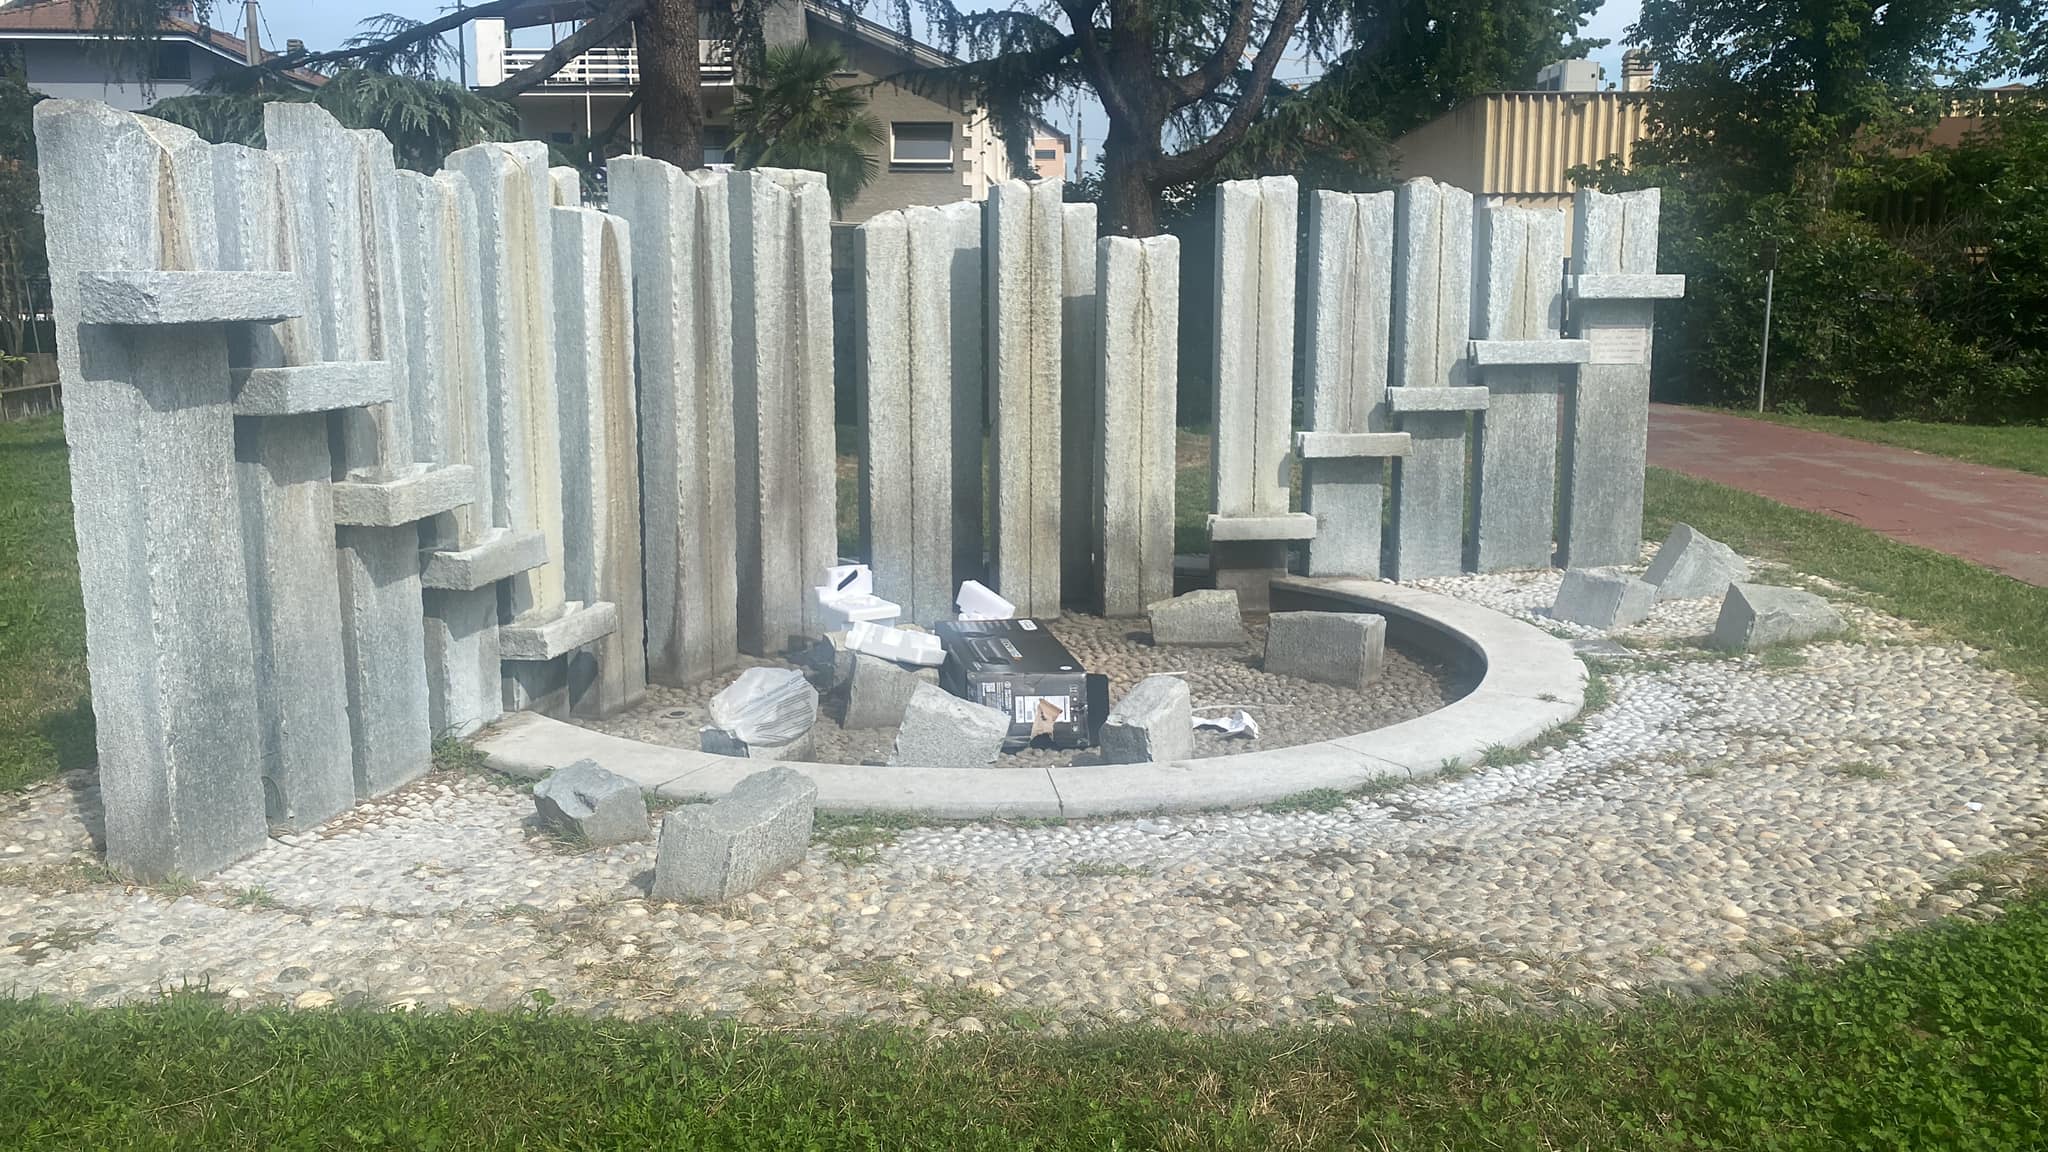 CARMAGNOLA – Maleducati riempiono di rifiuti la fontana del parco dietro le poste